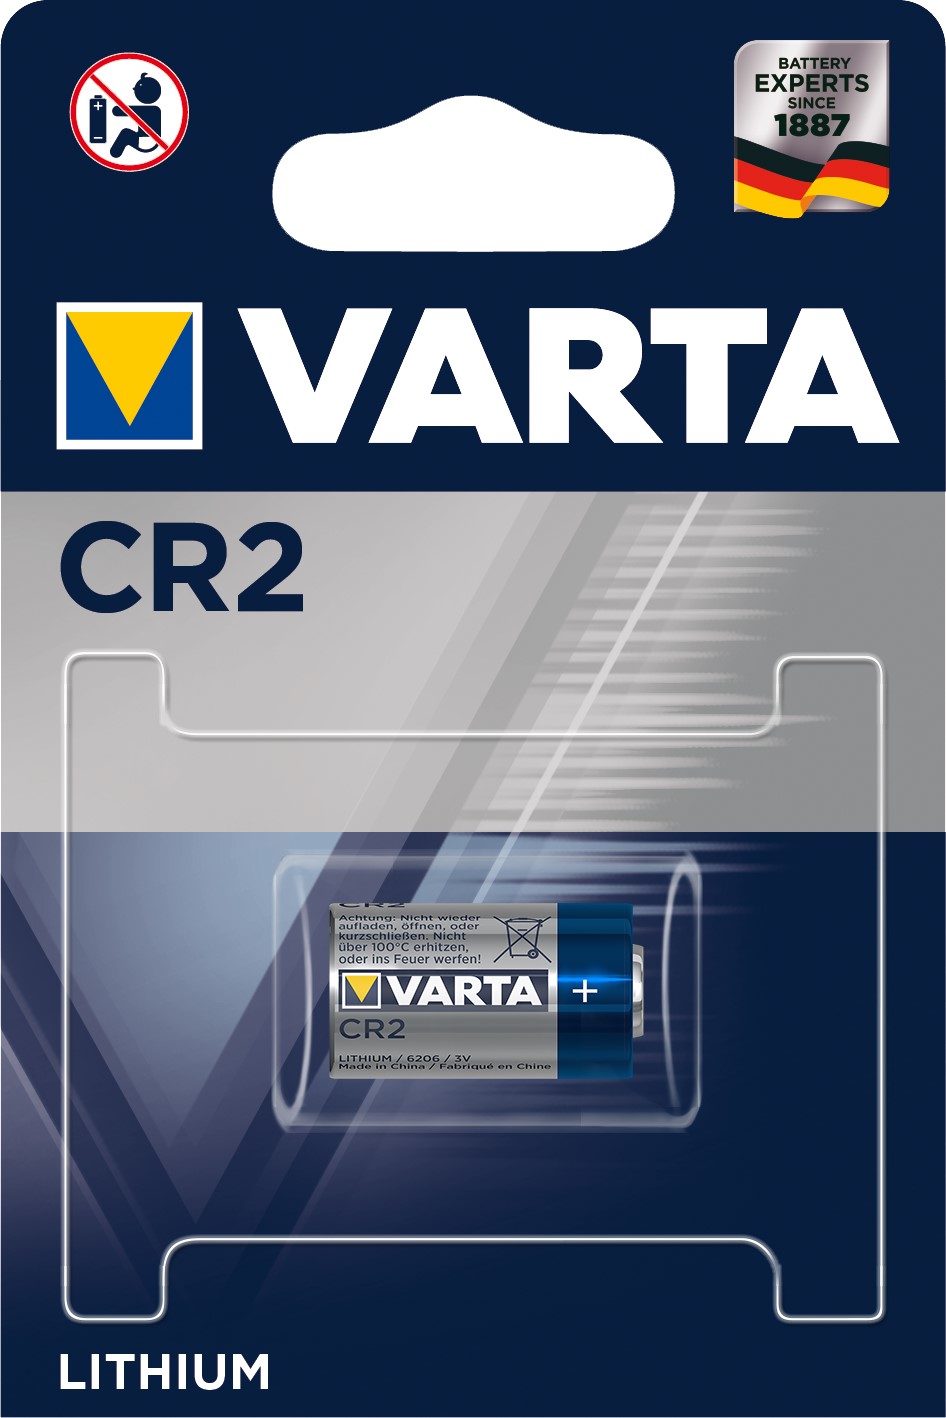 VARTA CR2 x1 Pile lithium 3V 880 mAh VARTA